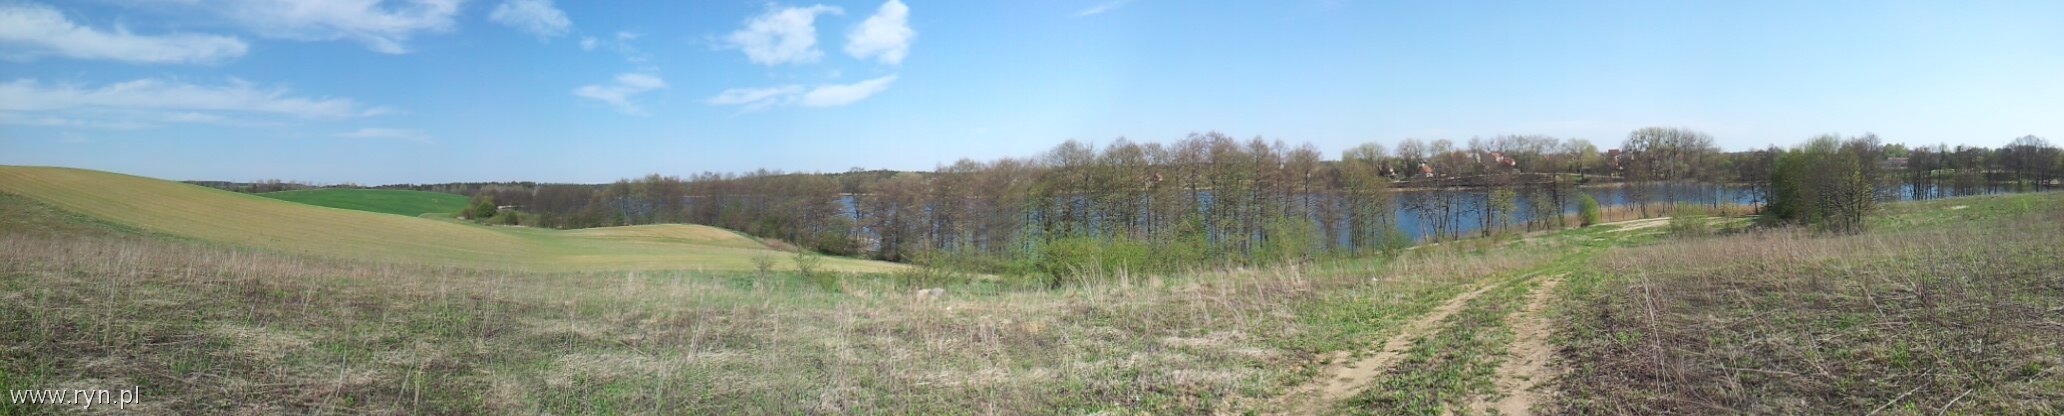 panorama jeziora Ołów od strony pól